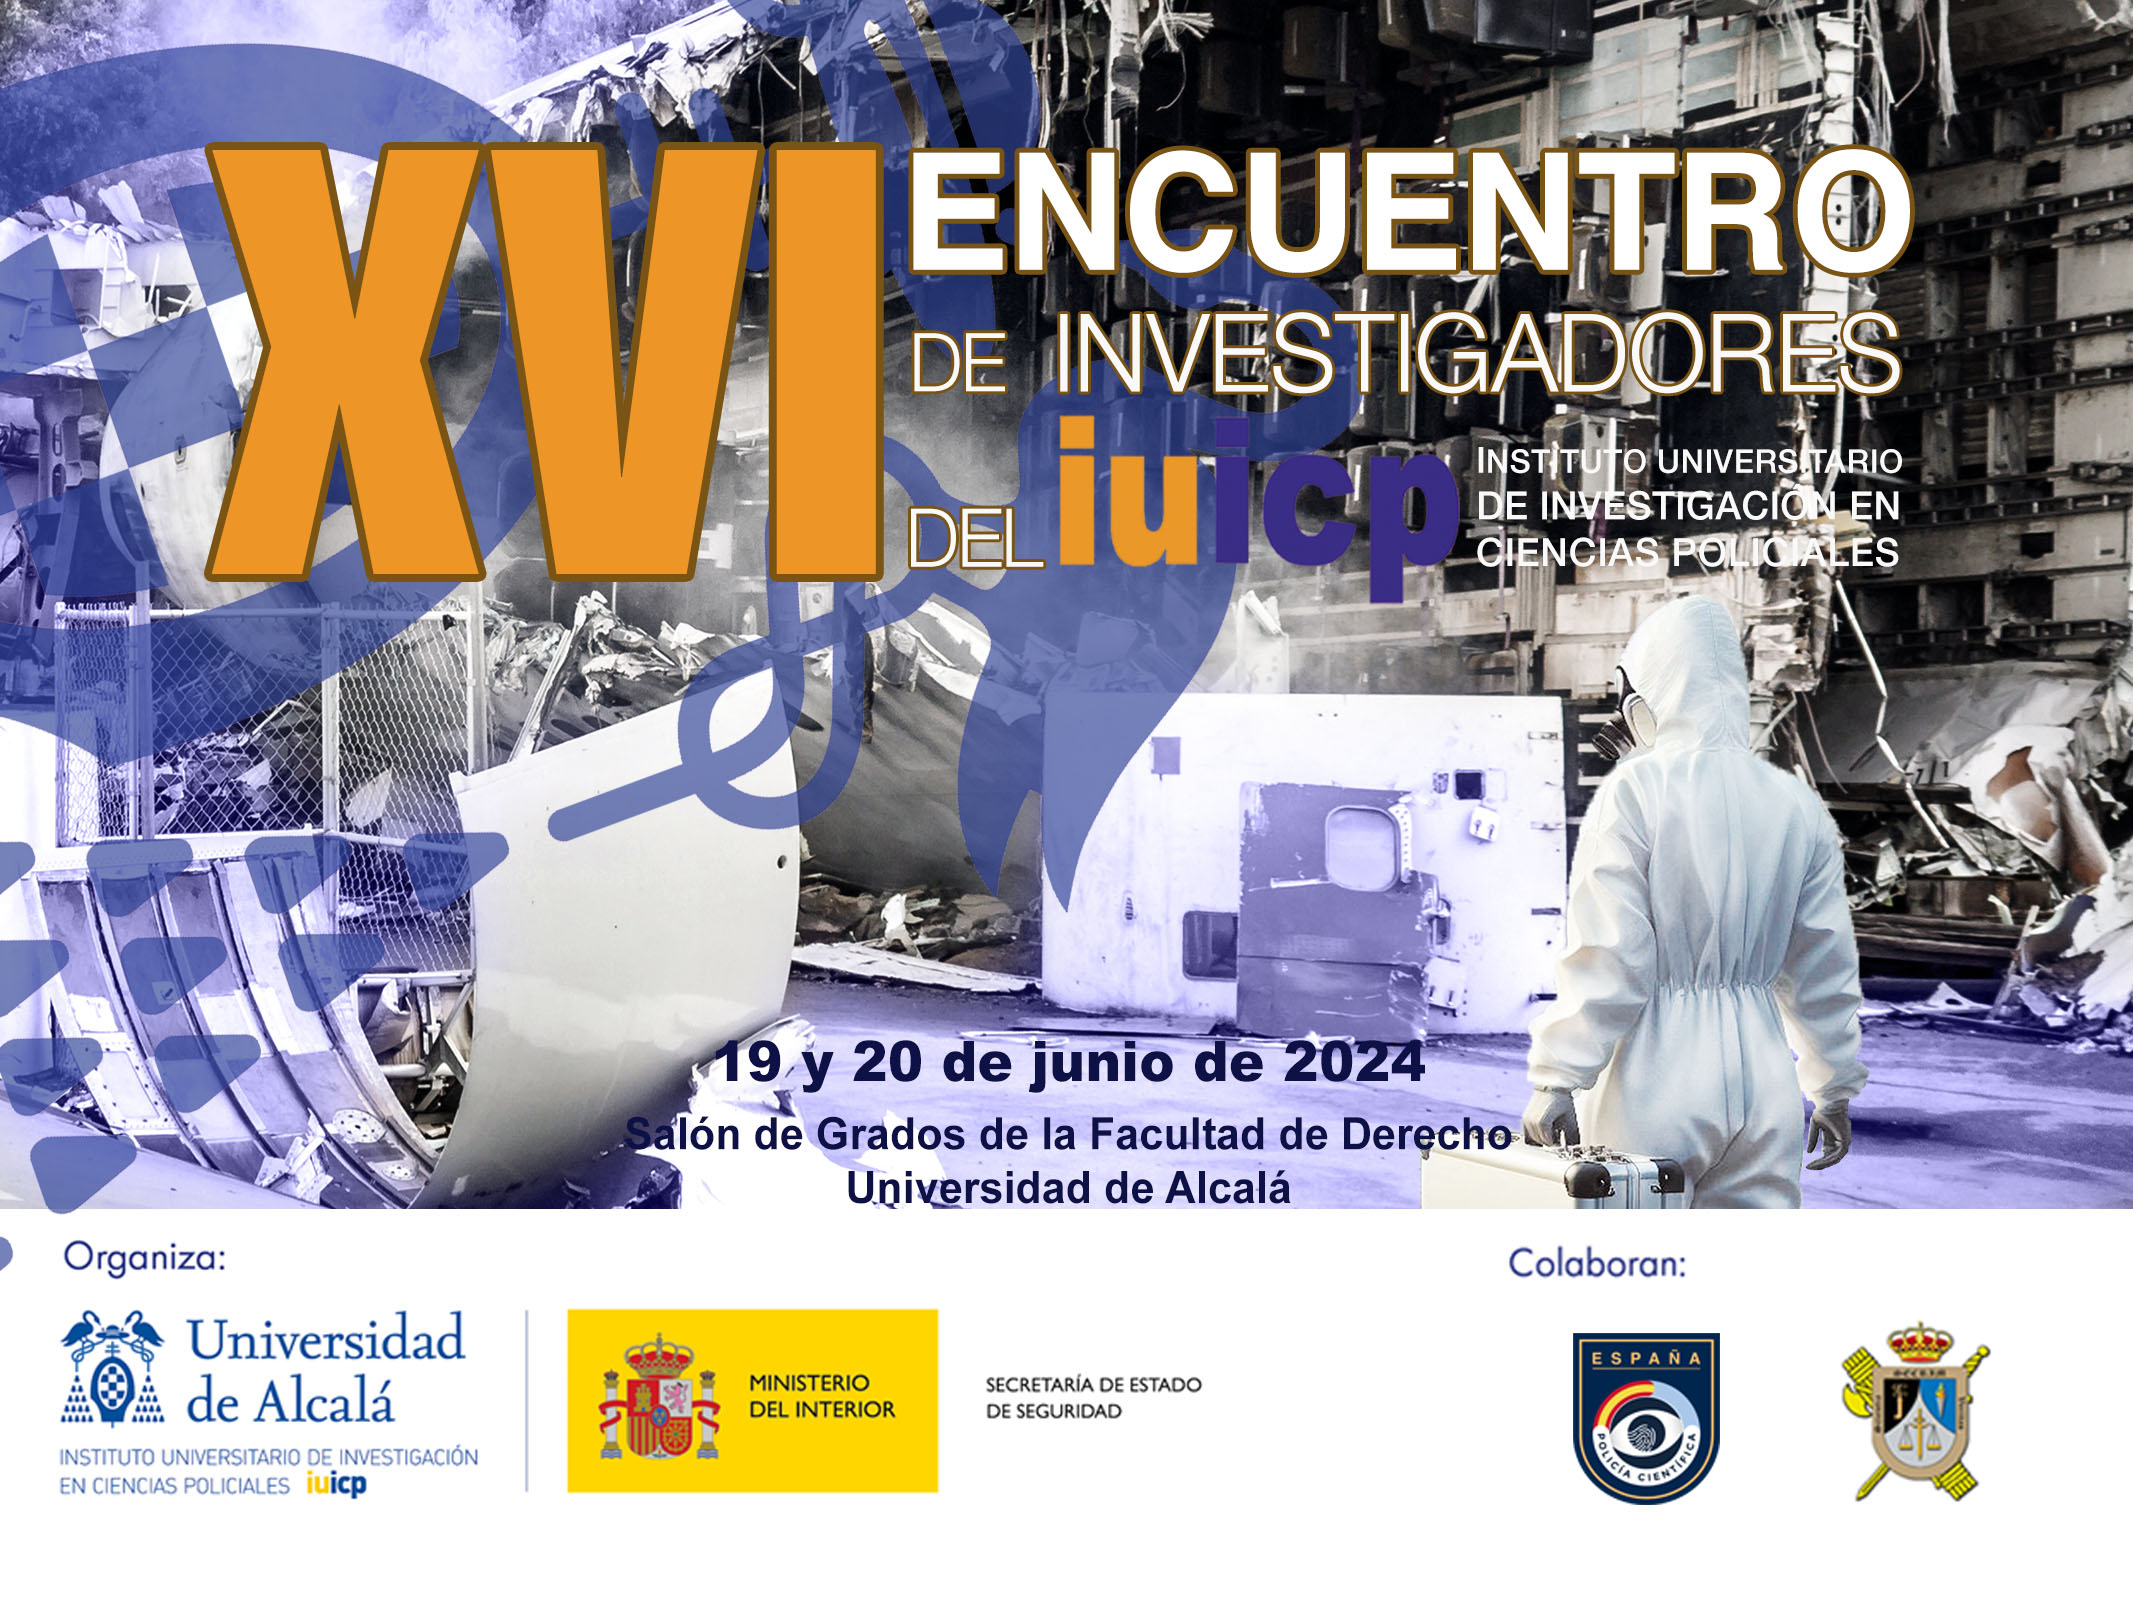 XVI Encuentro de Investigadores del IUICP (19 y 20 de junio 2024)